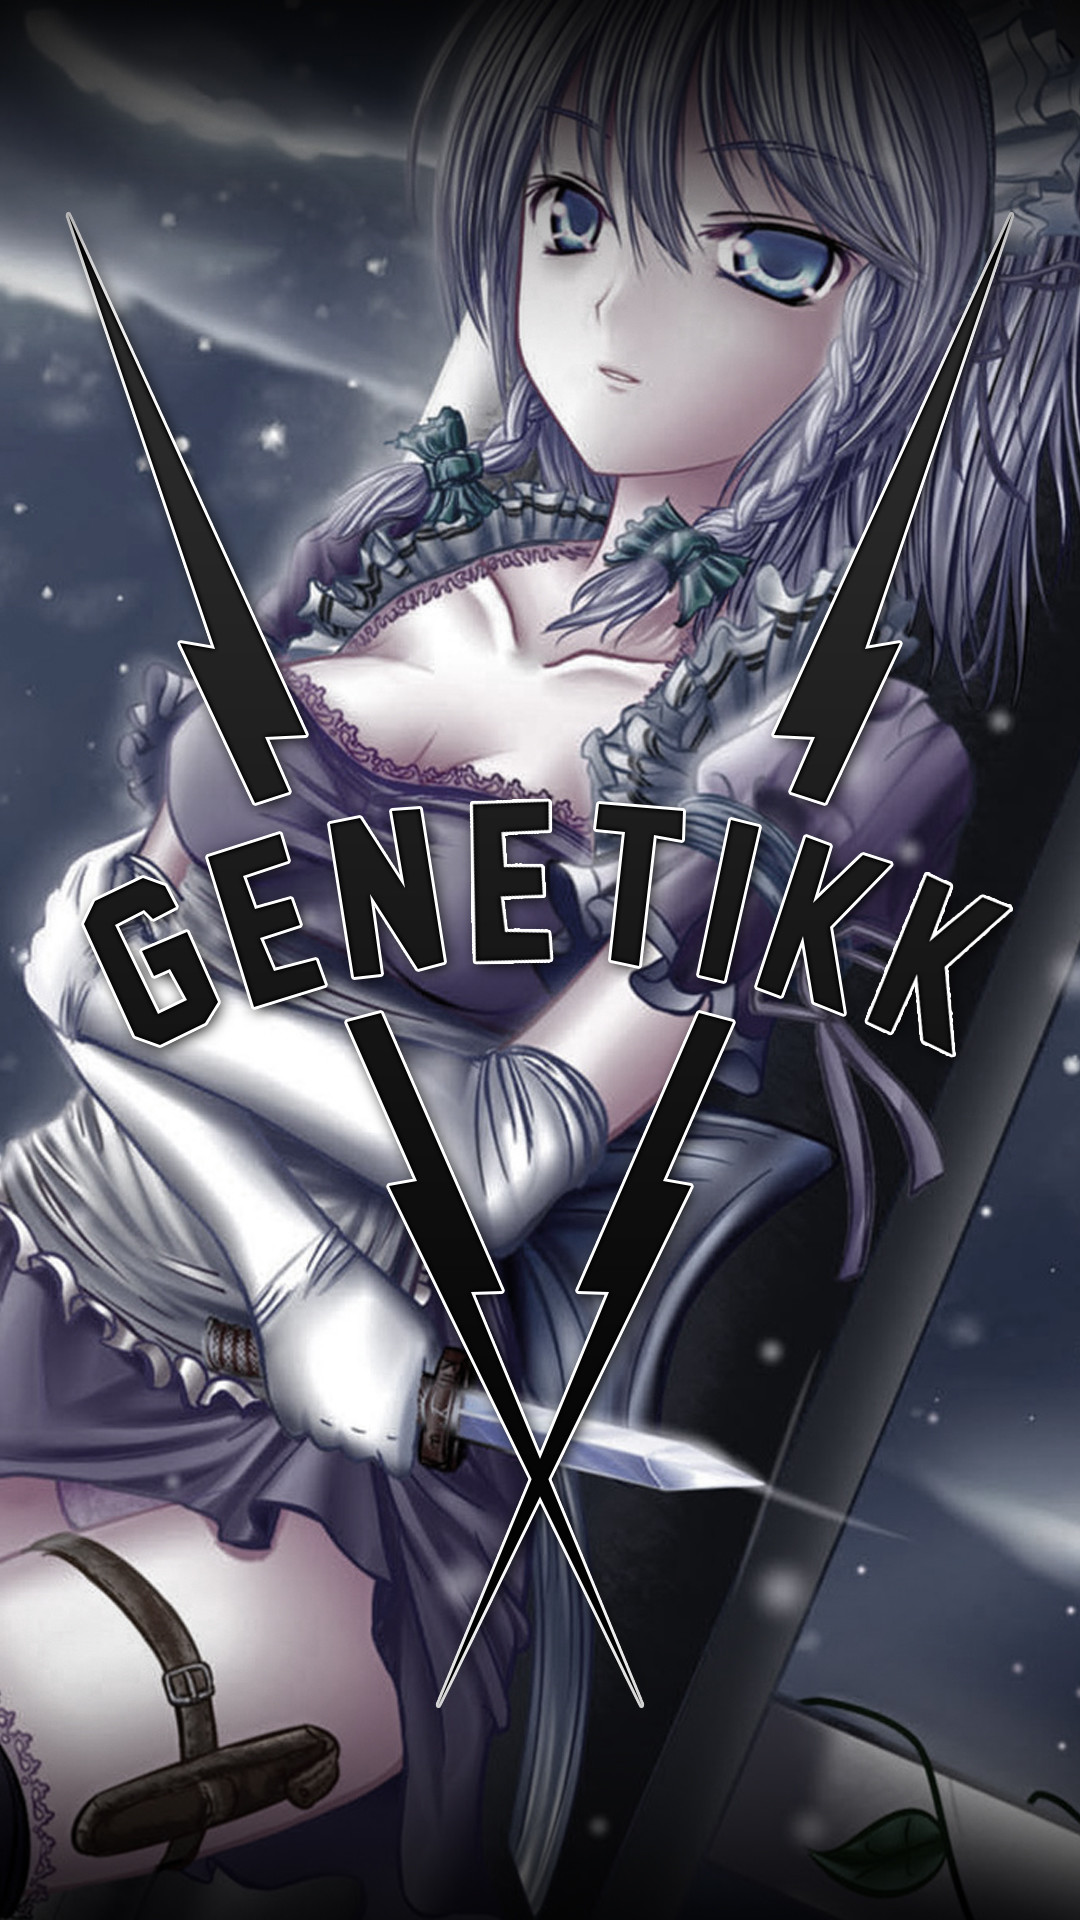 1080x1920 ... Genetikk Wallpaper - Anime Girl [] by Exyh